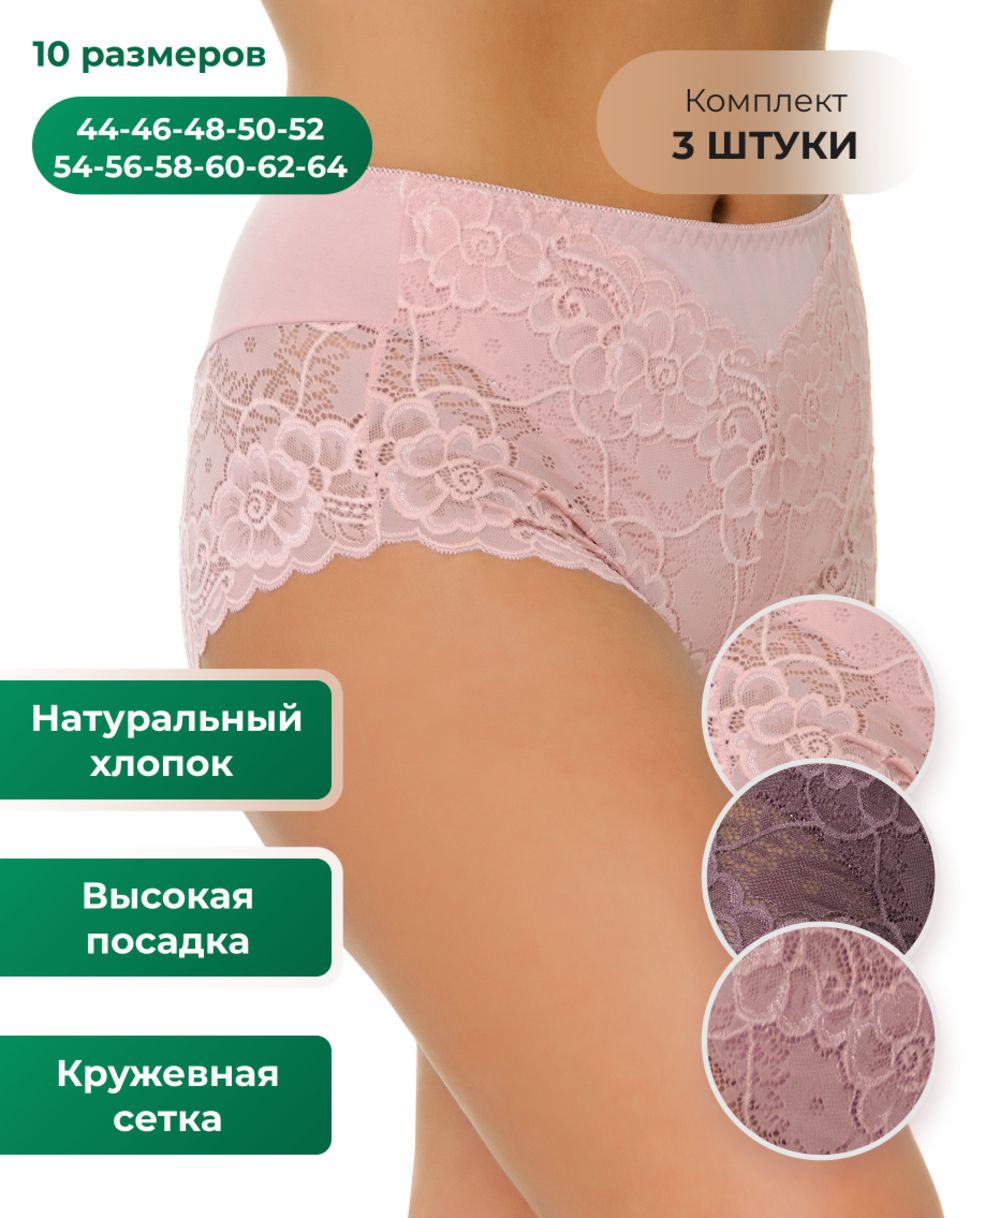 Набор женских трусов 801 HoneyFormat 3 шт. - розовый,фиолетовый,лиловый